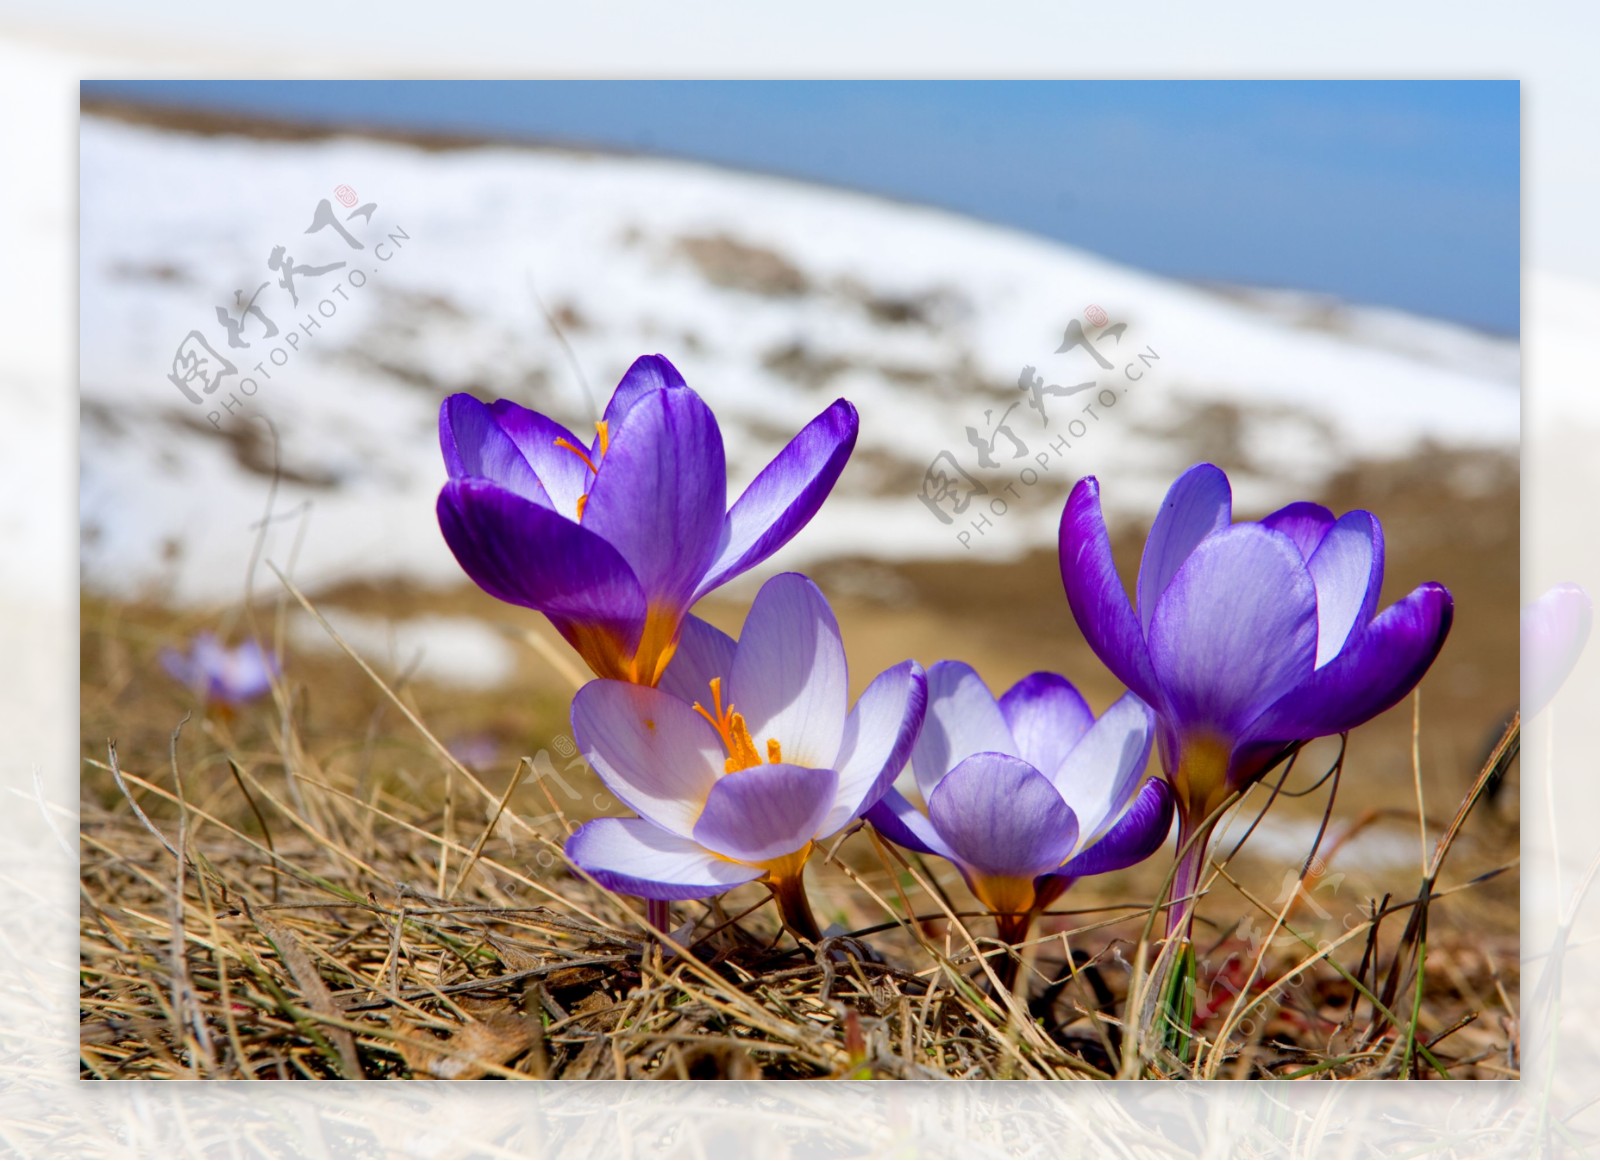 春天雪地上的花朵图片